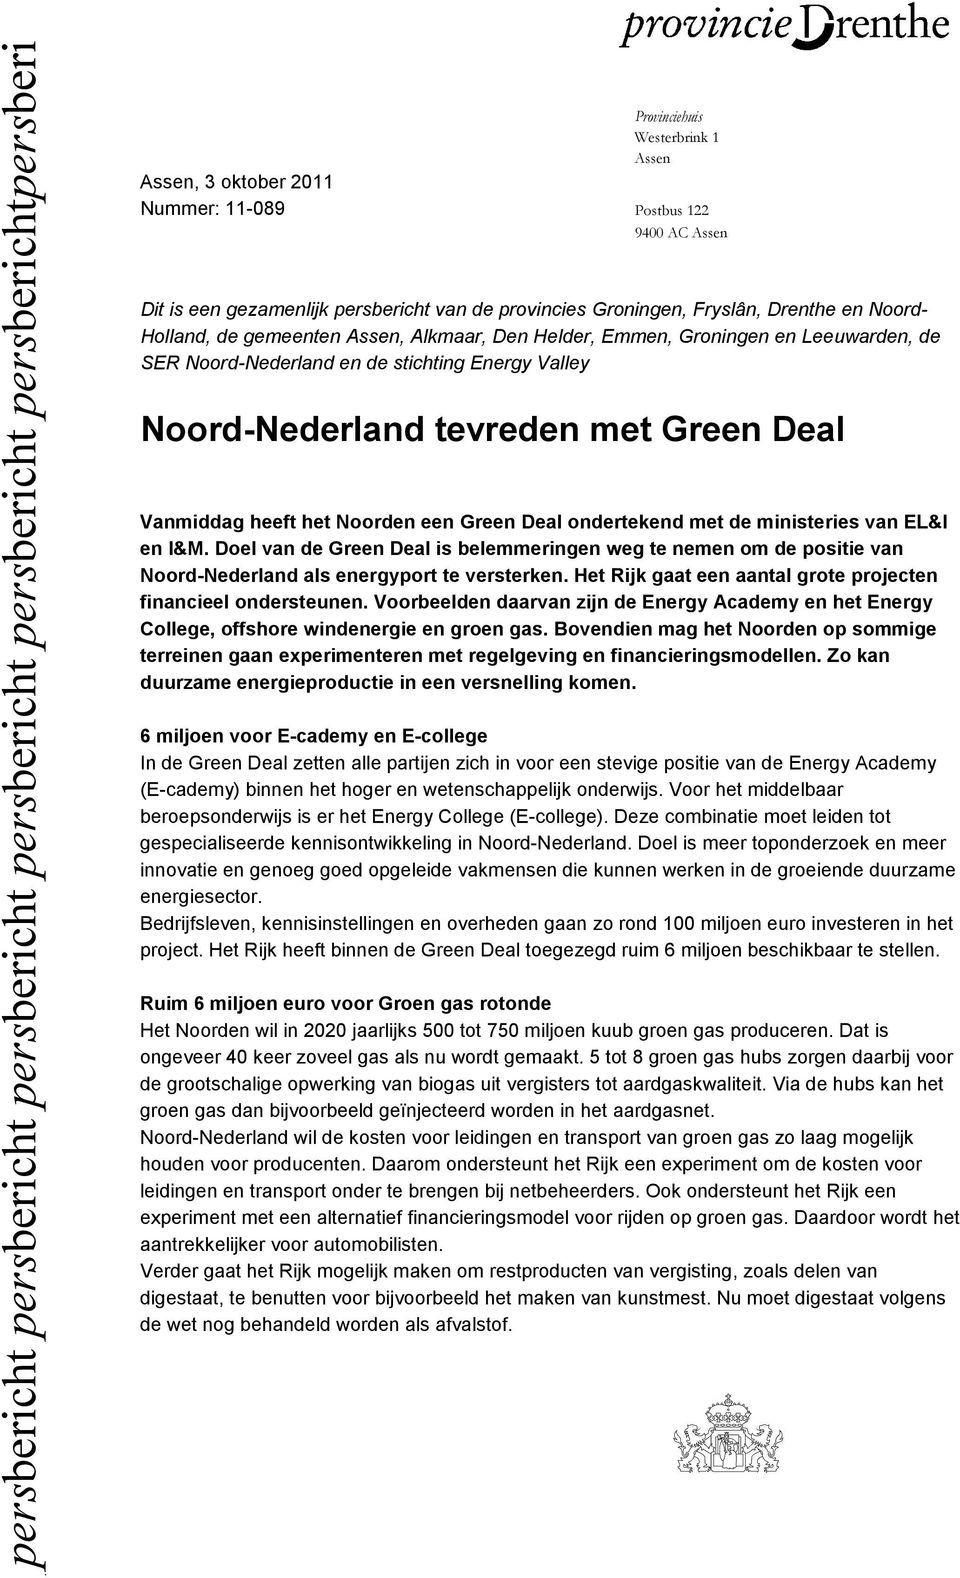 Green Deal ondertekend met de ministeries van EL&I en I&M. Doel van de Green Deal is belemmeringen weg te nemen om de positie van Noord-Nederland als energyport te versterken.